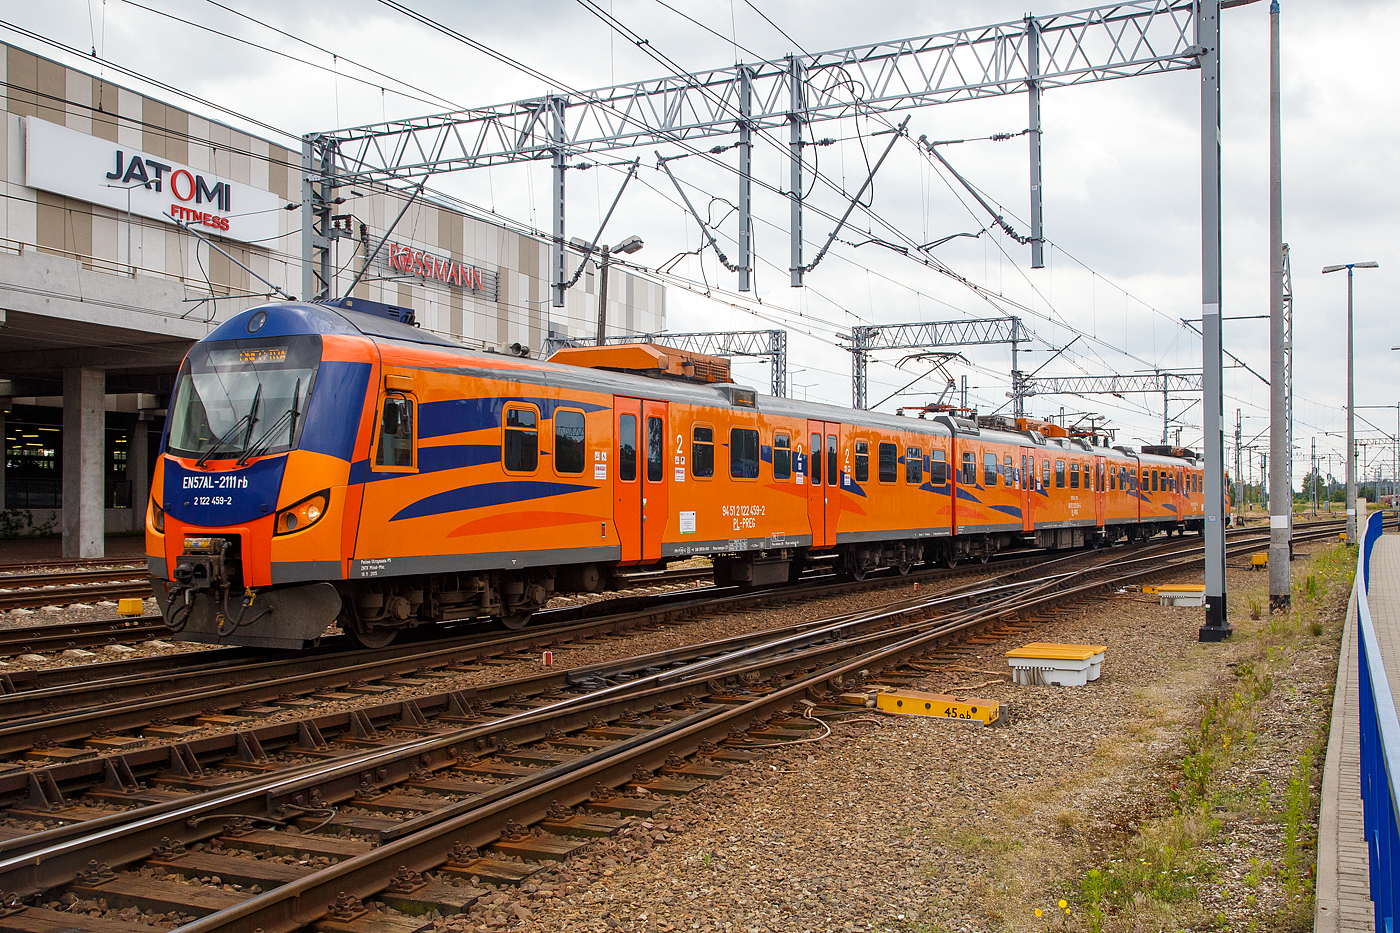 Der EN57AL-2111 (94 51 2 122 457-6 PL-PREG / 94 51 2 122 458-4 PL-PREG und 94 51 2 122 459-2 PL-PREG) ein modernisierter Triebzug vom Typ Pafawag 5B/6B der POLREGIO (Przewozy Regionalne Sp. z o.o.), ex EN57-1685, fährt am 25.06.2017 vom Hauptbahnhof Posen (Poznań Główny) in den Abstellbereich.

Der Triebzug wurde 1987 von PaFaWag in Wrocław unter der Fabriknummer 563 gebaut und als EN57-1685 an die PKP geliefert, seit 2008 bei der POLREGIO wurde er 2015 modernisiert und in EN57AL-2111 umbenannt.

Die Baureihe EN57 ist eine Baureihe dreiteiliger elektrischer Triebwagen ursprünglich der Polnischen Staatsbahnen (PKP). Seitdem der Nahverkehr aus diesen herausgelöst wurde, fahren sie für die jeweilige Nachfolgegesellschaft, hauptsächlich Przewozy Regionalne, teilweise (wie hier) erheblich modernisiert.

Die Elektrischen-Triebzüge EN57 bestehen aus einer festen Konfiguration von drei Fahrzeugteilen, zwei Steuerwagen (Herstellerbezeichnung 5B) und einem Triebwagen (Herstellerbezeichnung 6A) dazwischen. Scharfenbergkupplungen an den Enden ermöglicht das Zusammenkuppeln mehrerer Triebzüge.

TECHNISCHE DATEN:
Nummerierung (Auslieferzustand): 001–130; 601–1828; 1900–1953
Gebaute Anzahl: 1412
Hersteller:  PaFaWag in Wrocław
Baujahre:  1961–1993
Spurweite:  1.435 mm (Normalspur)
Achsformel: 2'2'+Bo'Bo'+2'2'
Länge über Kupplung: 64.970 mm
Breite: 2.880 mm
Höhe: 3.720 mm
Treibraddurchmesser: 1.000 mm
Laufraddurchmesser: 920 mm
Dienstgewicht: 126,5 t
Höchstgeschwindigkeit: 110 km/h erste Serie, später 120 km/h
Leistung: 4×145 kW (1.Serie) / 4×175 kW (2.Serie) / 4×250 kW (3.Serie)
Stromsystem: 3 kV DC
Anzahl der Fahrmotoren: 4
Kupplungstyp:  Scharfenbergkupplung
Sitzplätze:  212